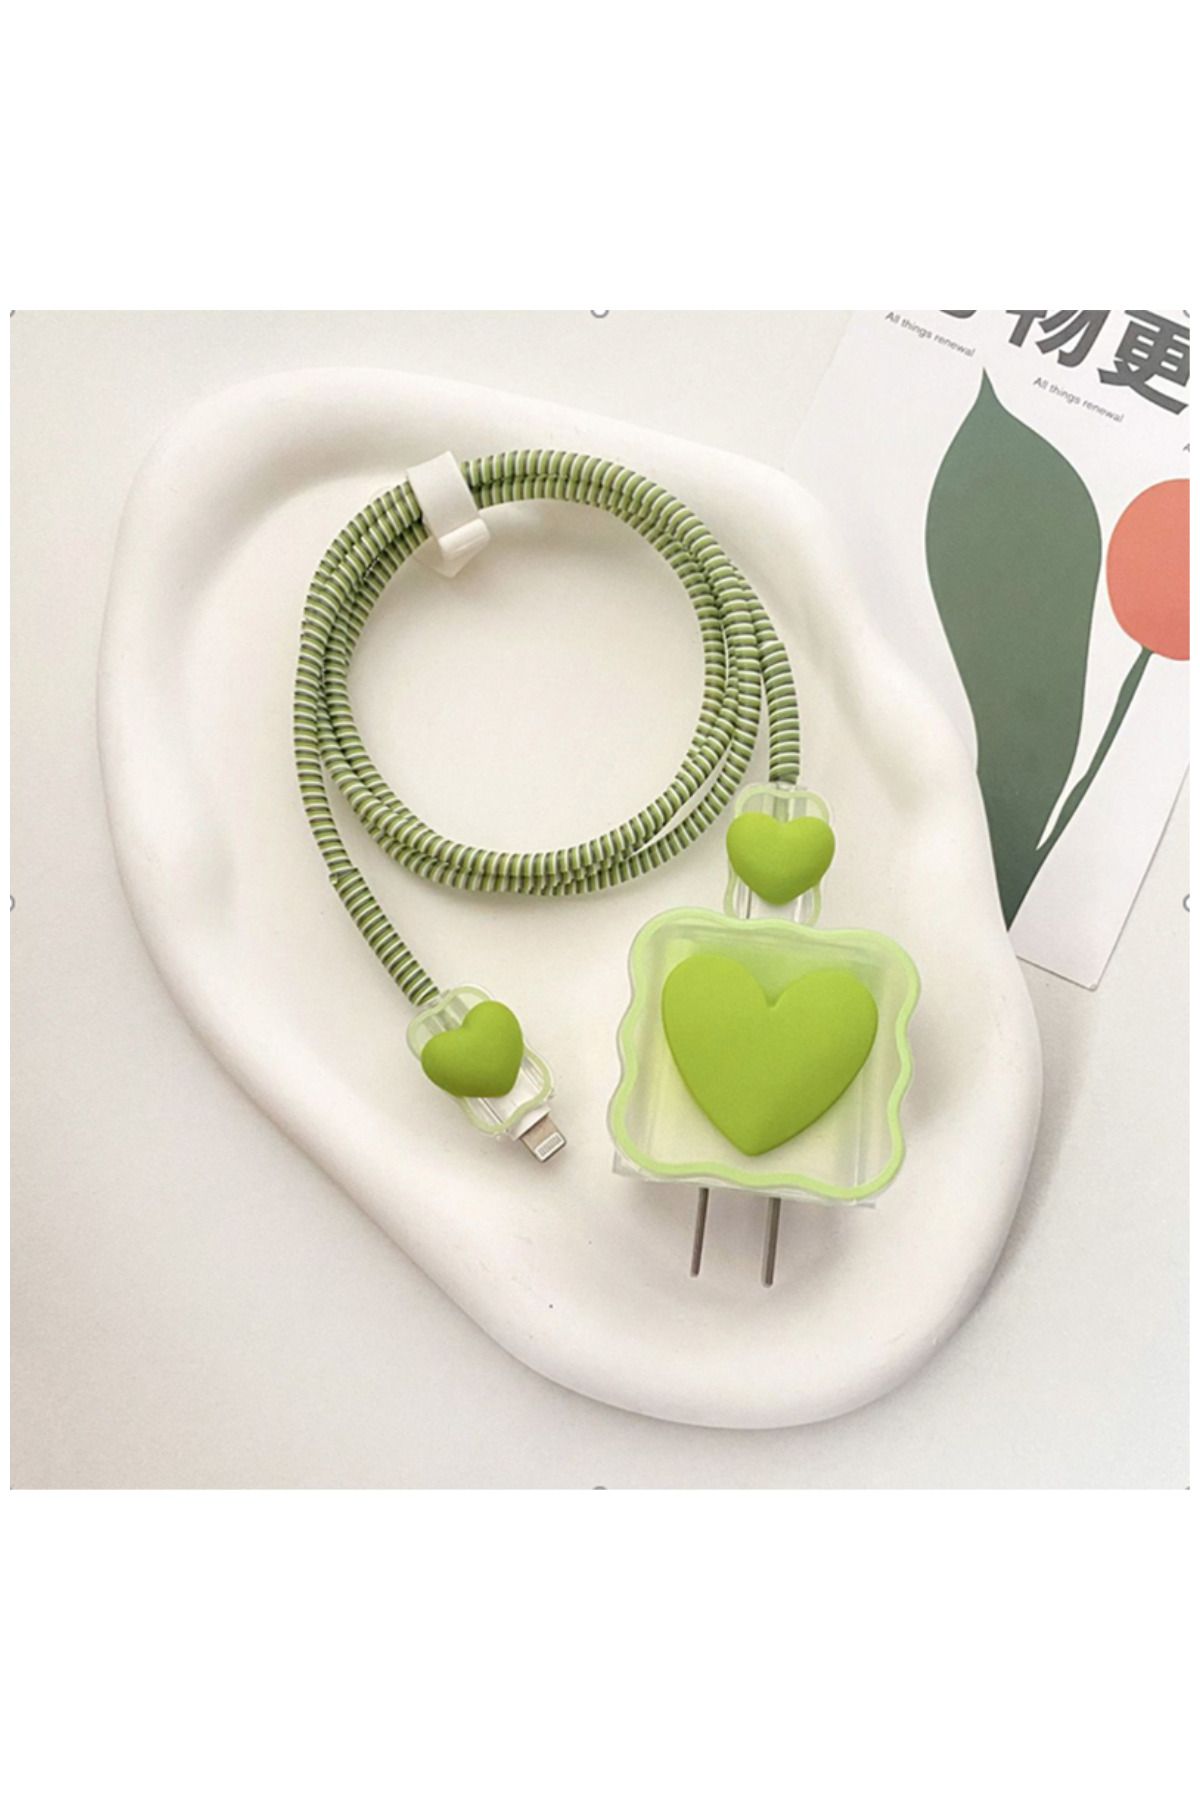 Zebana Yeni Trend Iphone 18w/20w Adaptör Uyumlu Şarj Başlığı Ve Kablo Koruyucu 4'lü Set Açık Yeşil